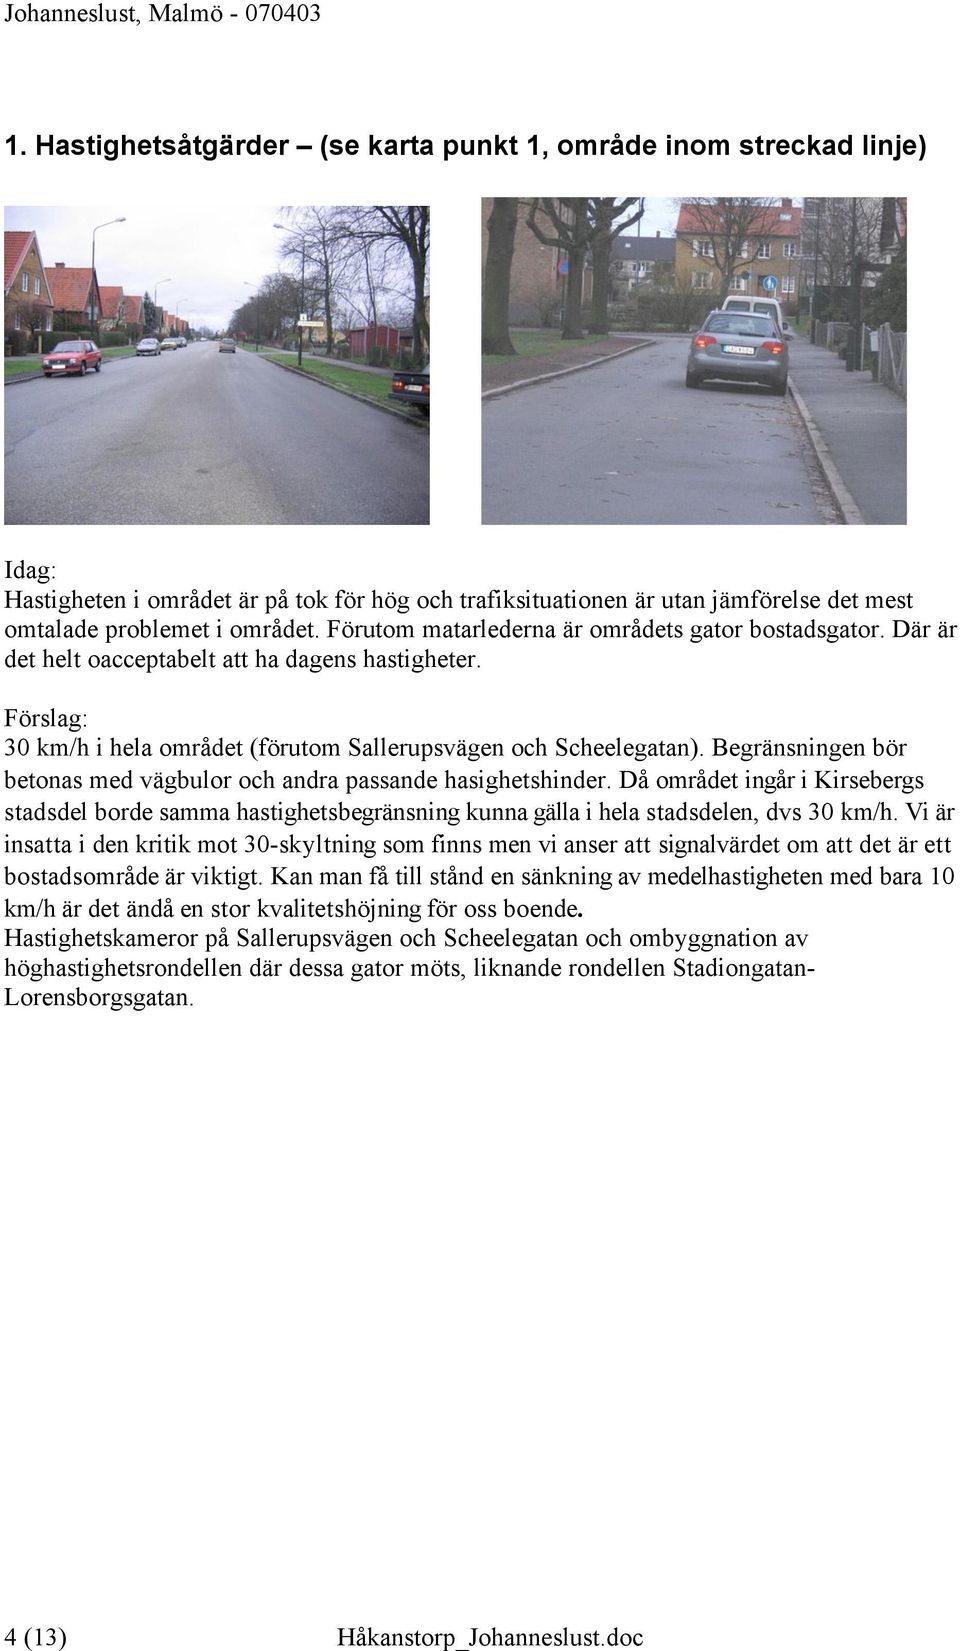 Begränsningen bör betonas med vägbulor och andra passande hasighetshinder. Då området ingår i Kirsebergs stadsdel borde samma hastighetsbegränsning kunna gälla i hela stadsdelen, dvs 30 km/h.